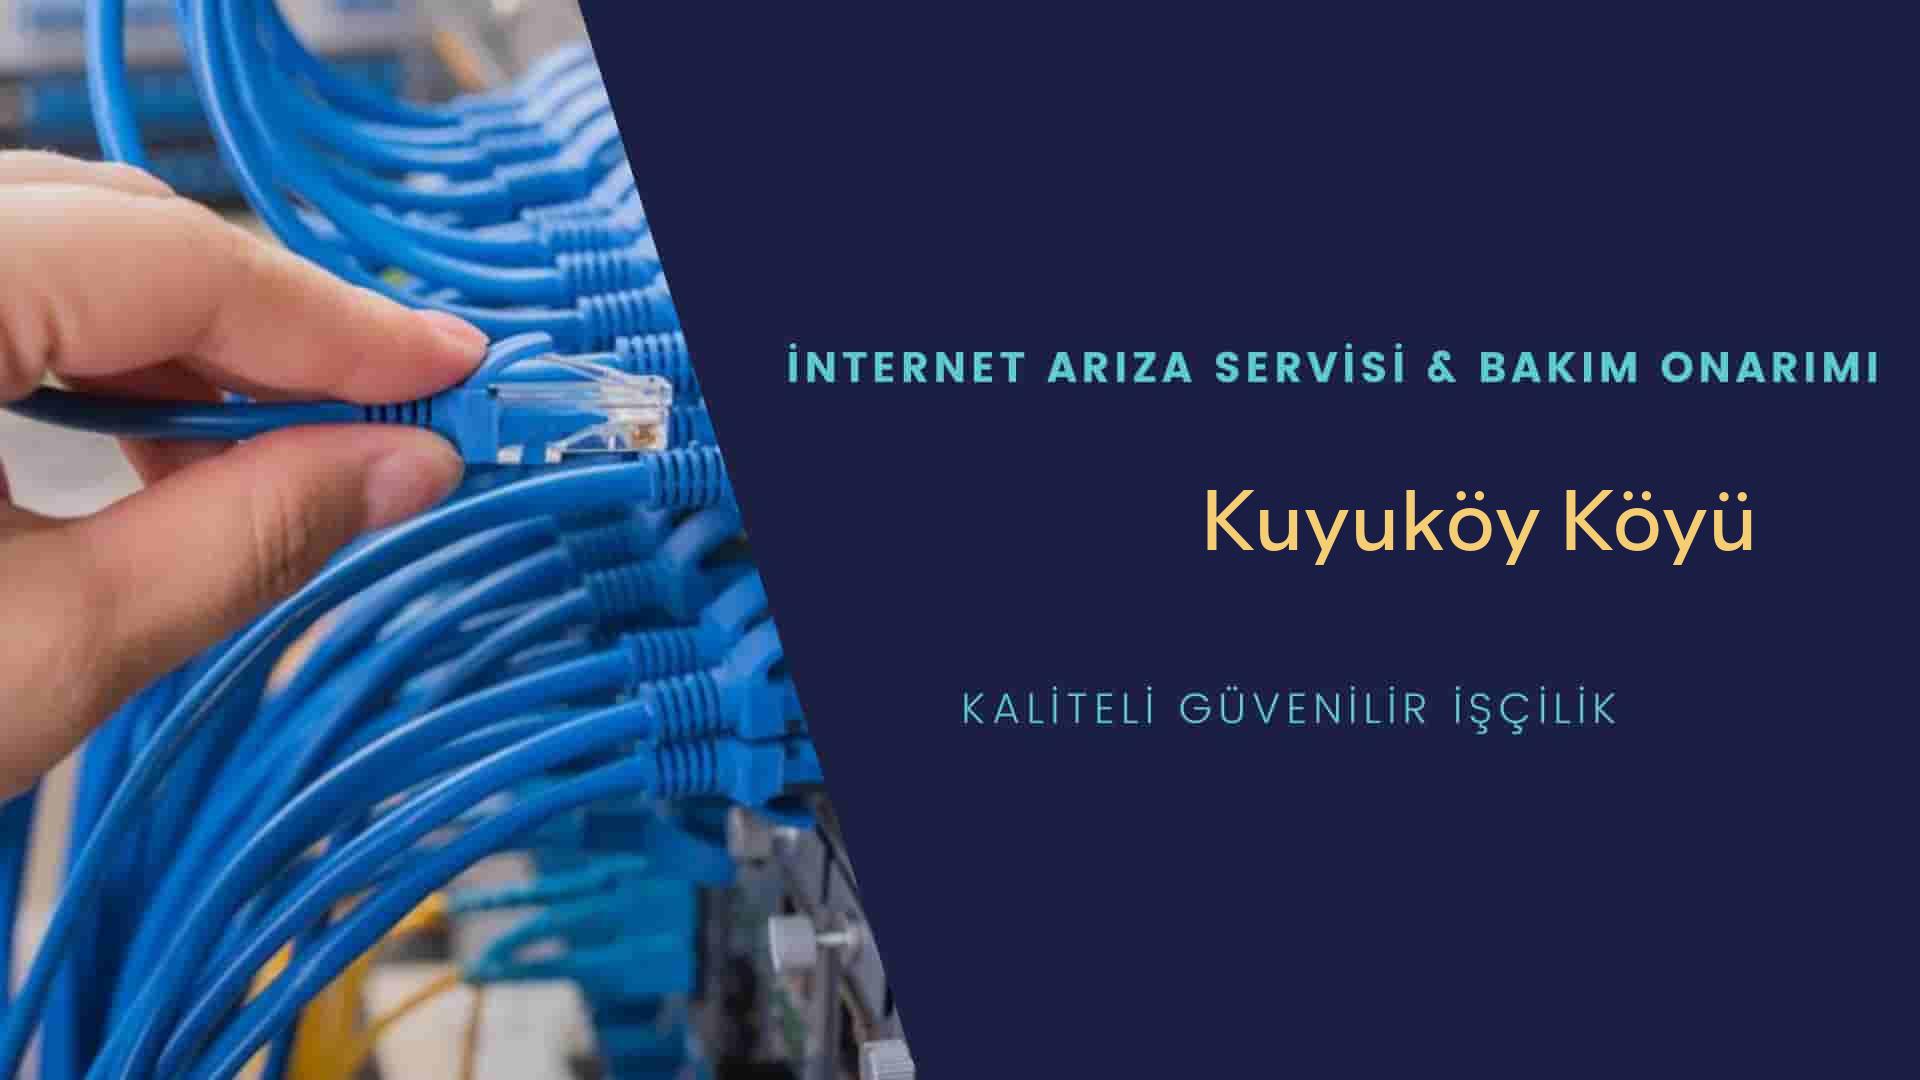 Kuyuköy Köyü internet kablosu çekimi yapan yerler veya elektrikçiler mi? arıyorsunuz doğru yerdesiniz o zaman sizlere 7/24 yardımcı olacak profesyonel ustalarımız bir telefon kadar yakındır size.